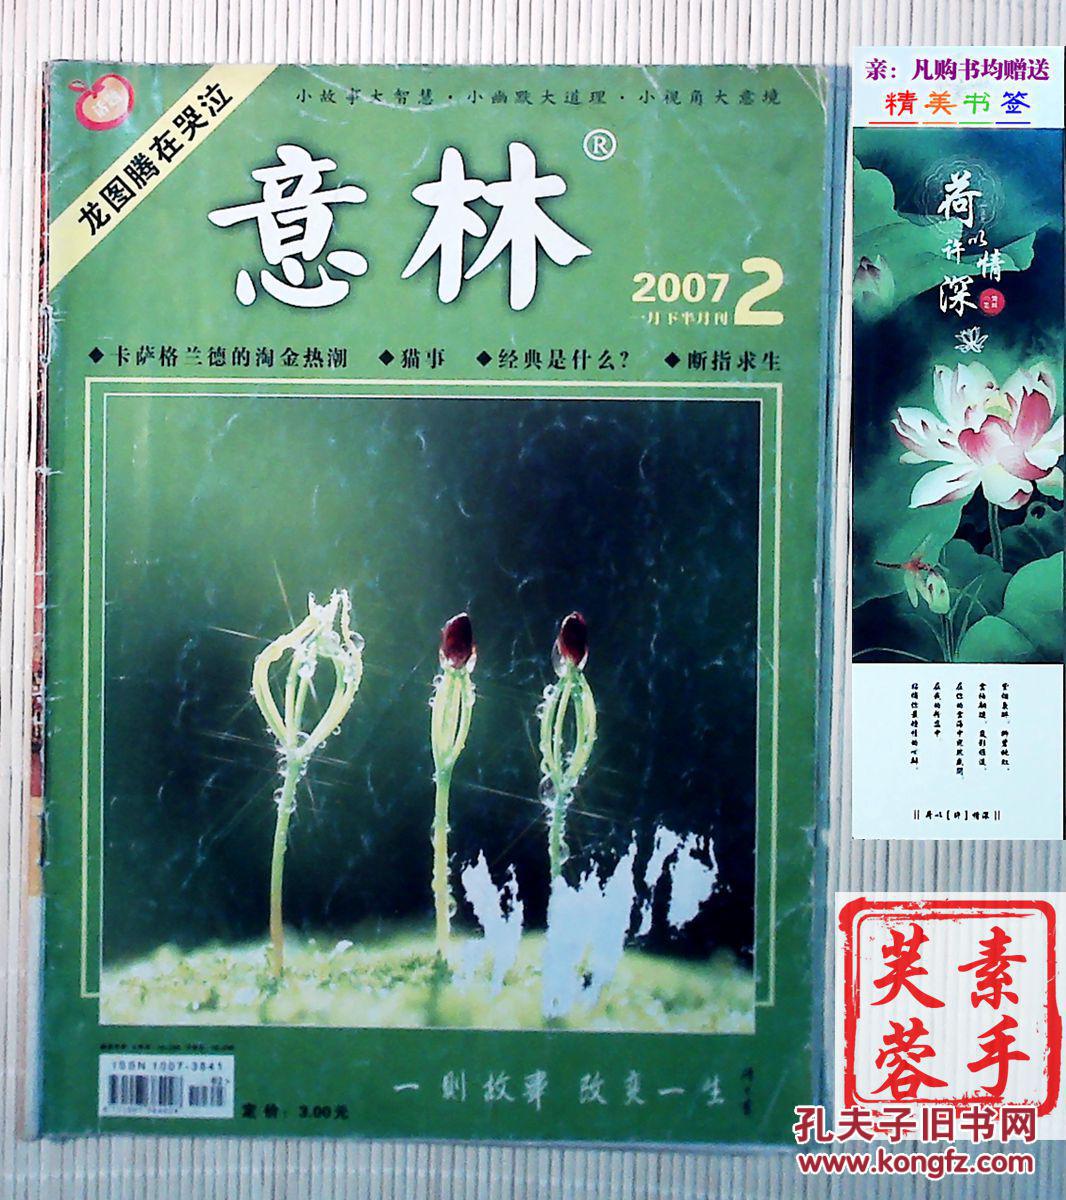 【意林杂志】2007年第2期--一则故事,改变一生